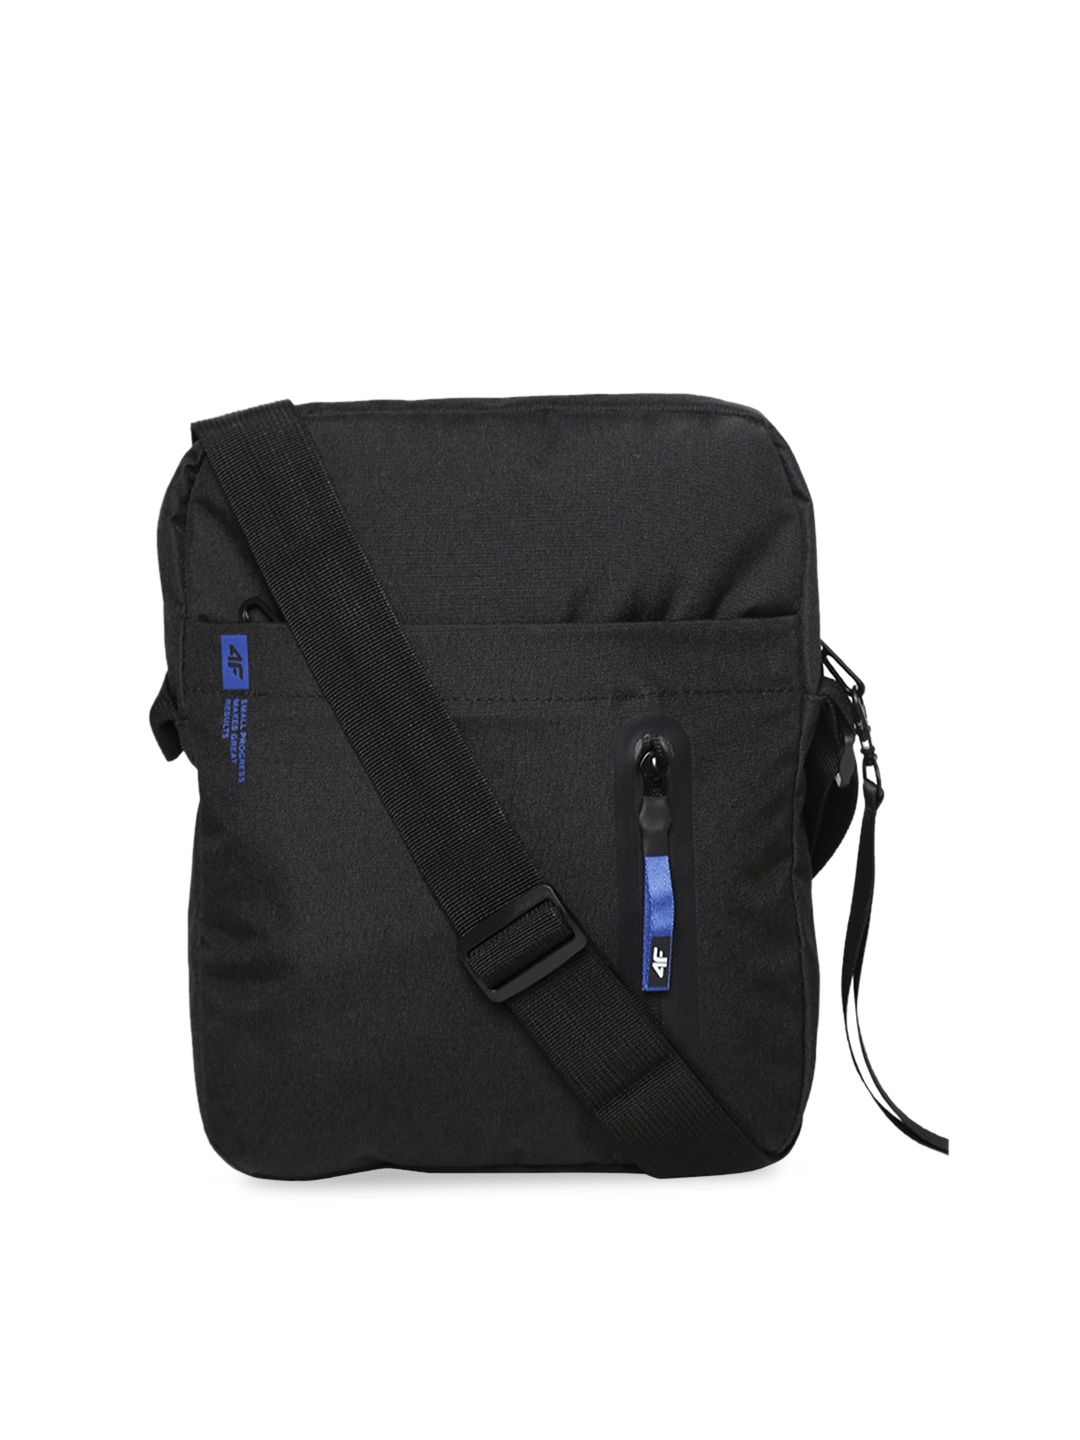 Buy 4f Unisex Black Shoulder Messenger Bag Messenger Bag For Unisex 9899243 Myntra